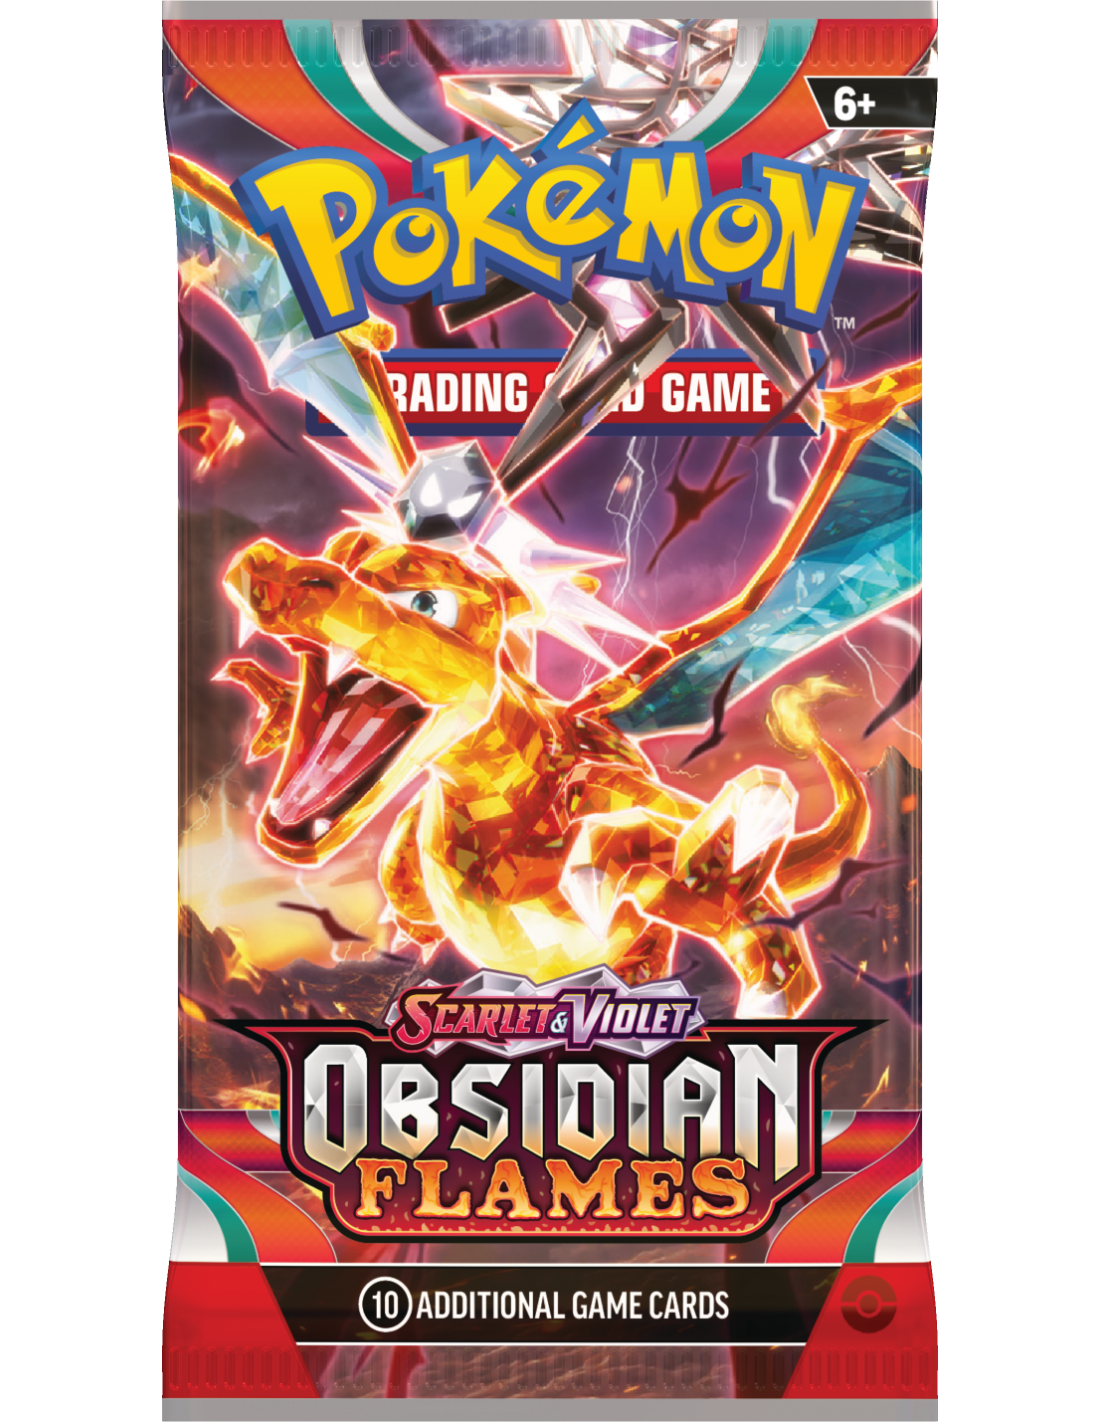 Brug Scarlet & Violet - Obsidian Flames booster - Pokémon TCG til en forbedret oplevelse